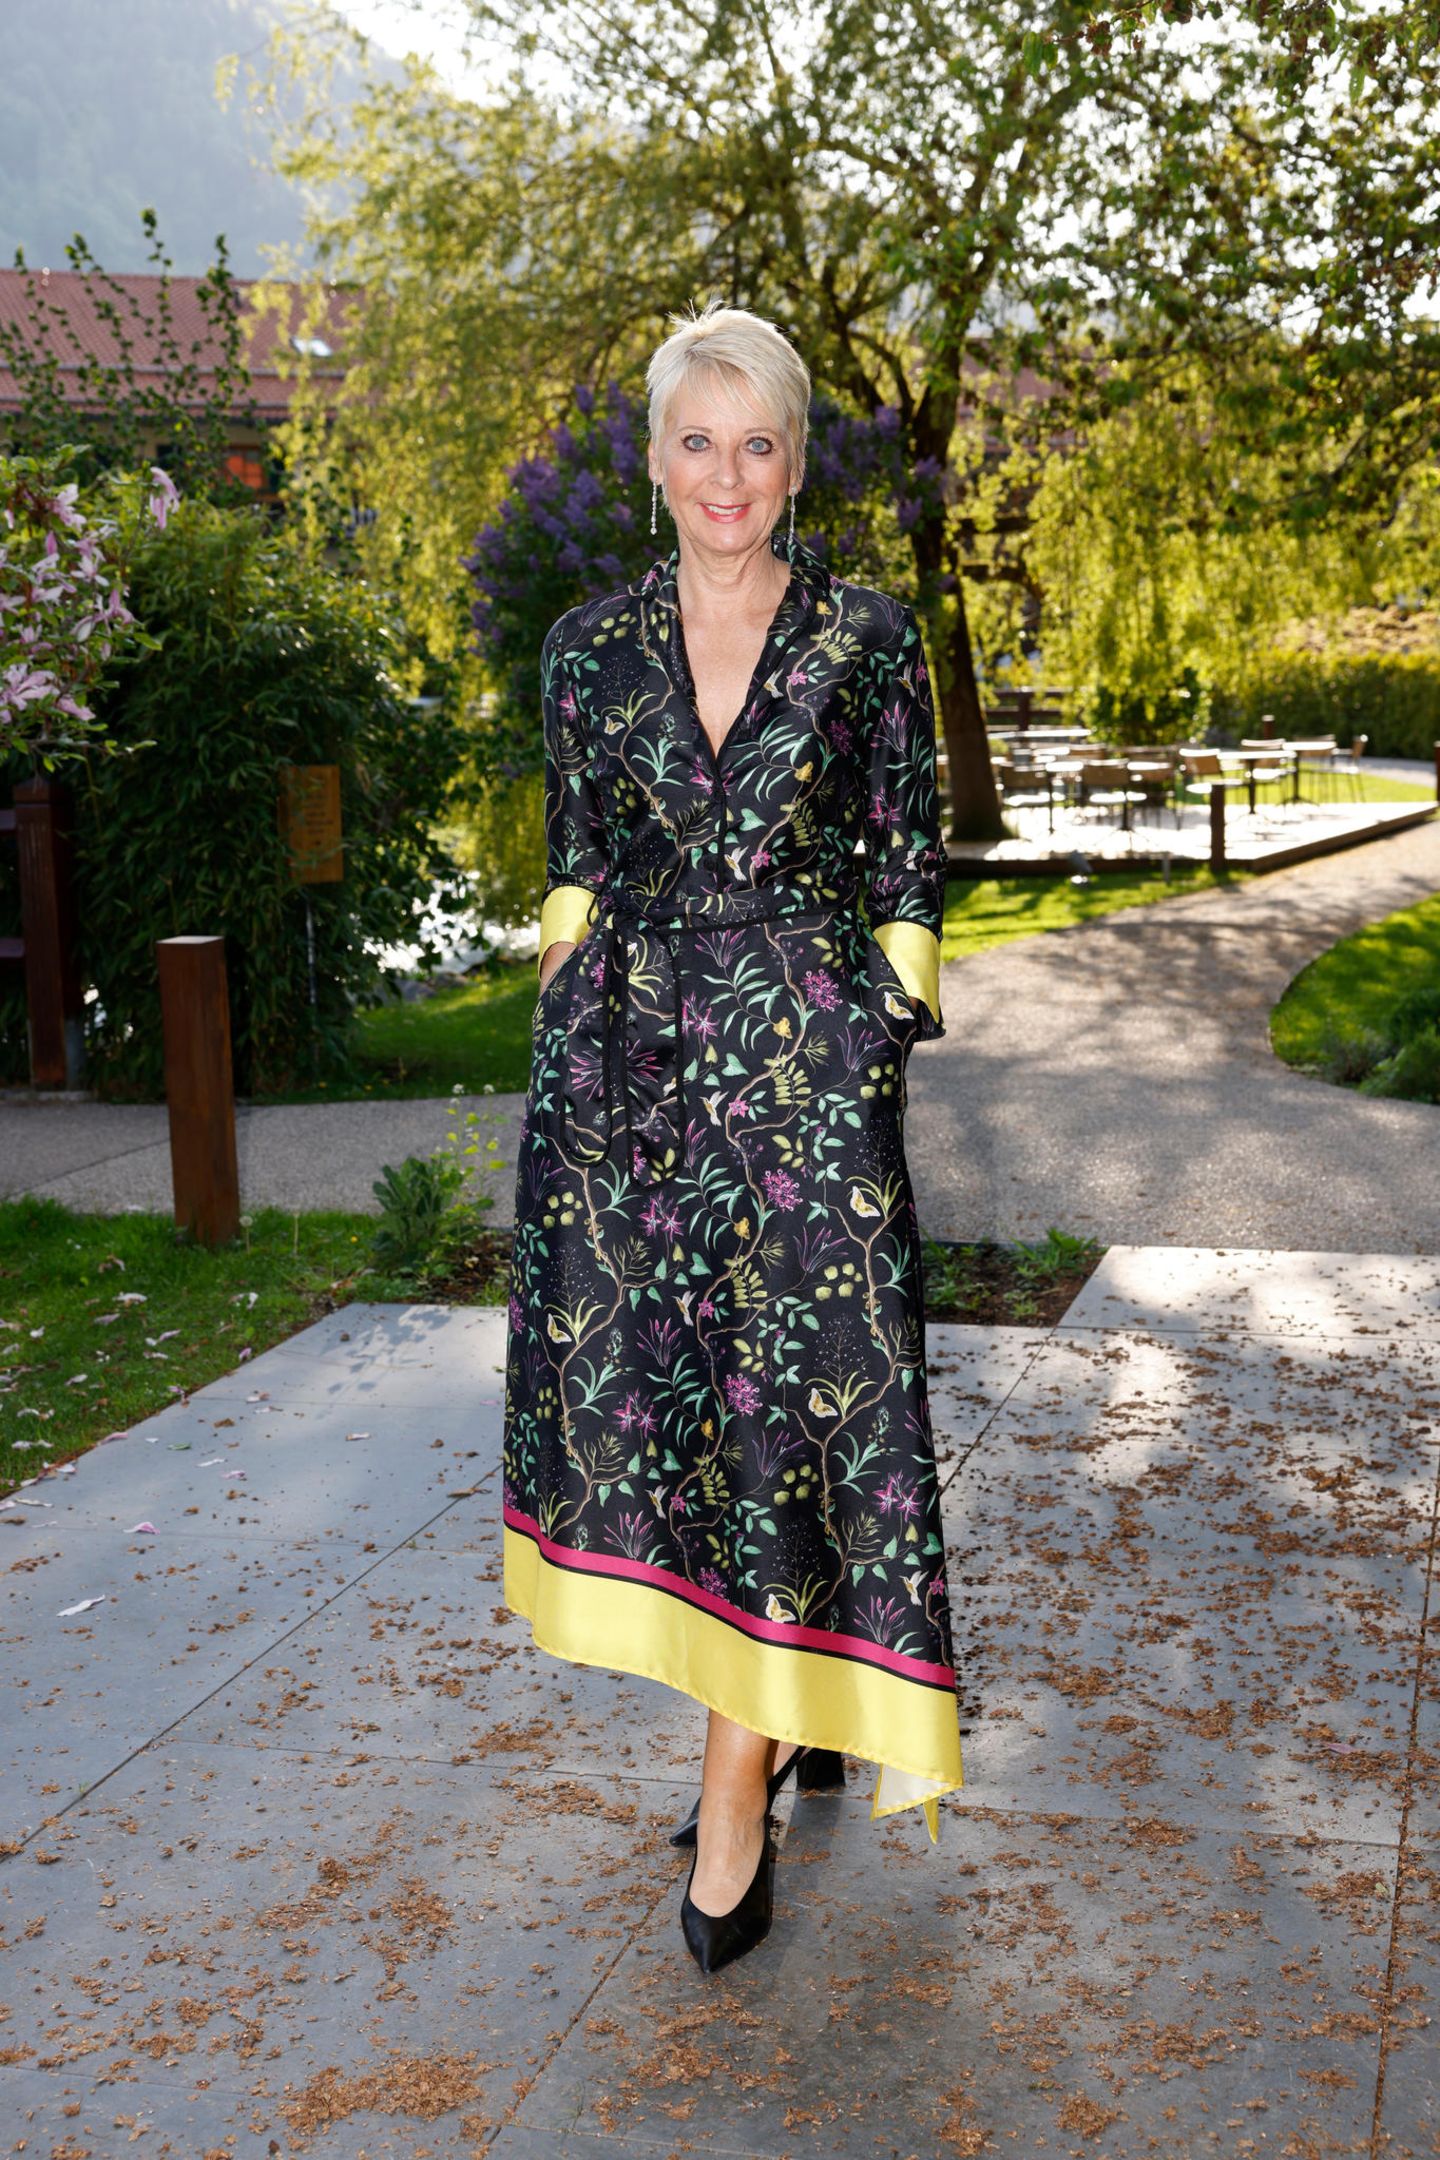 Andrea Kaestel (Sisley Cosmetics) präsentiert sich im hübschen Seiden-Kleid mit Muster.